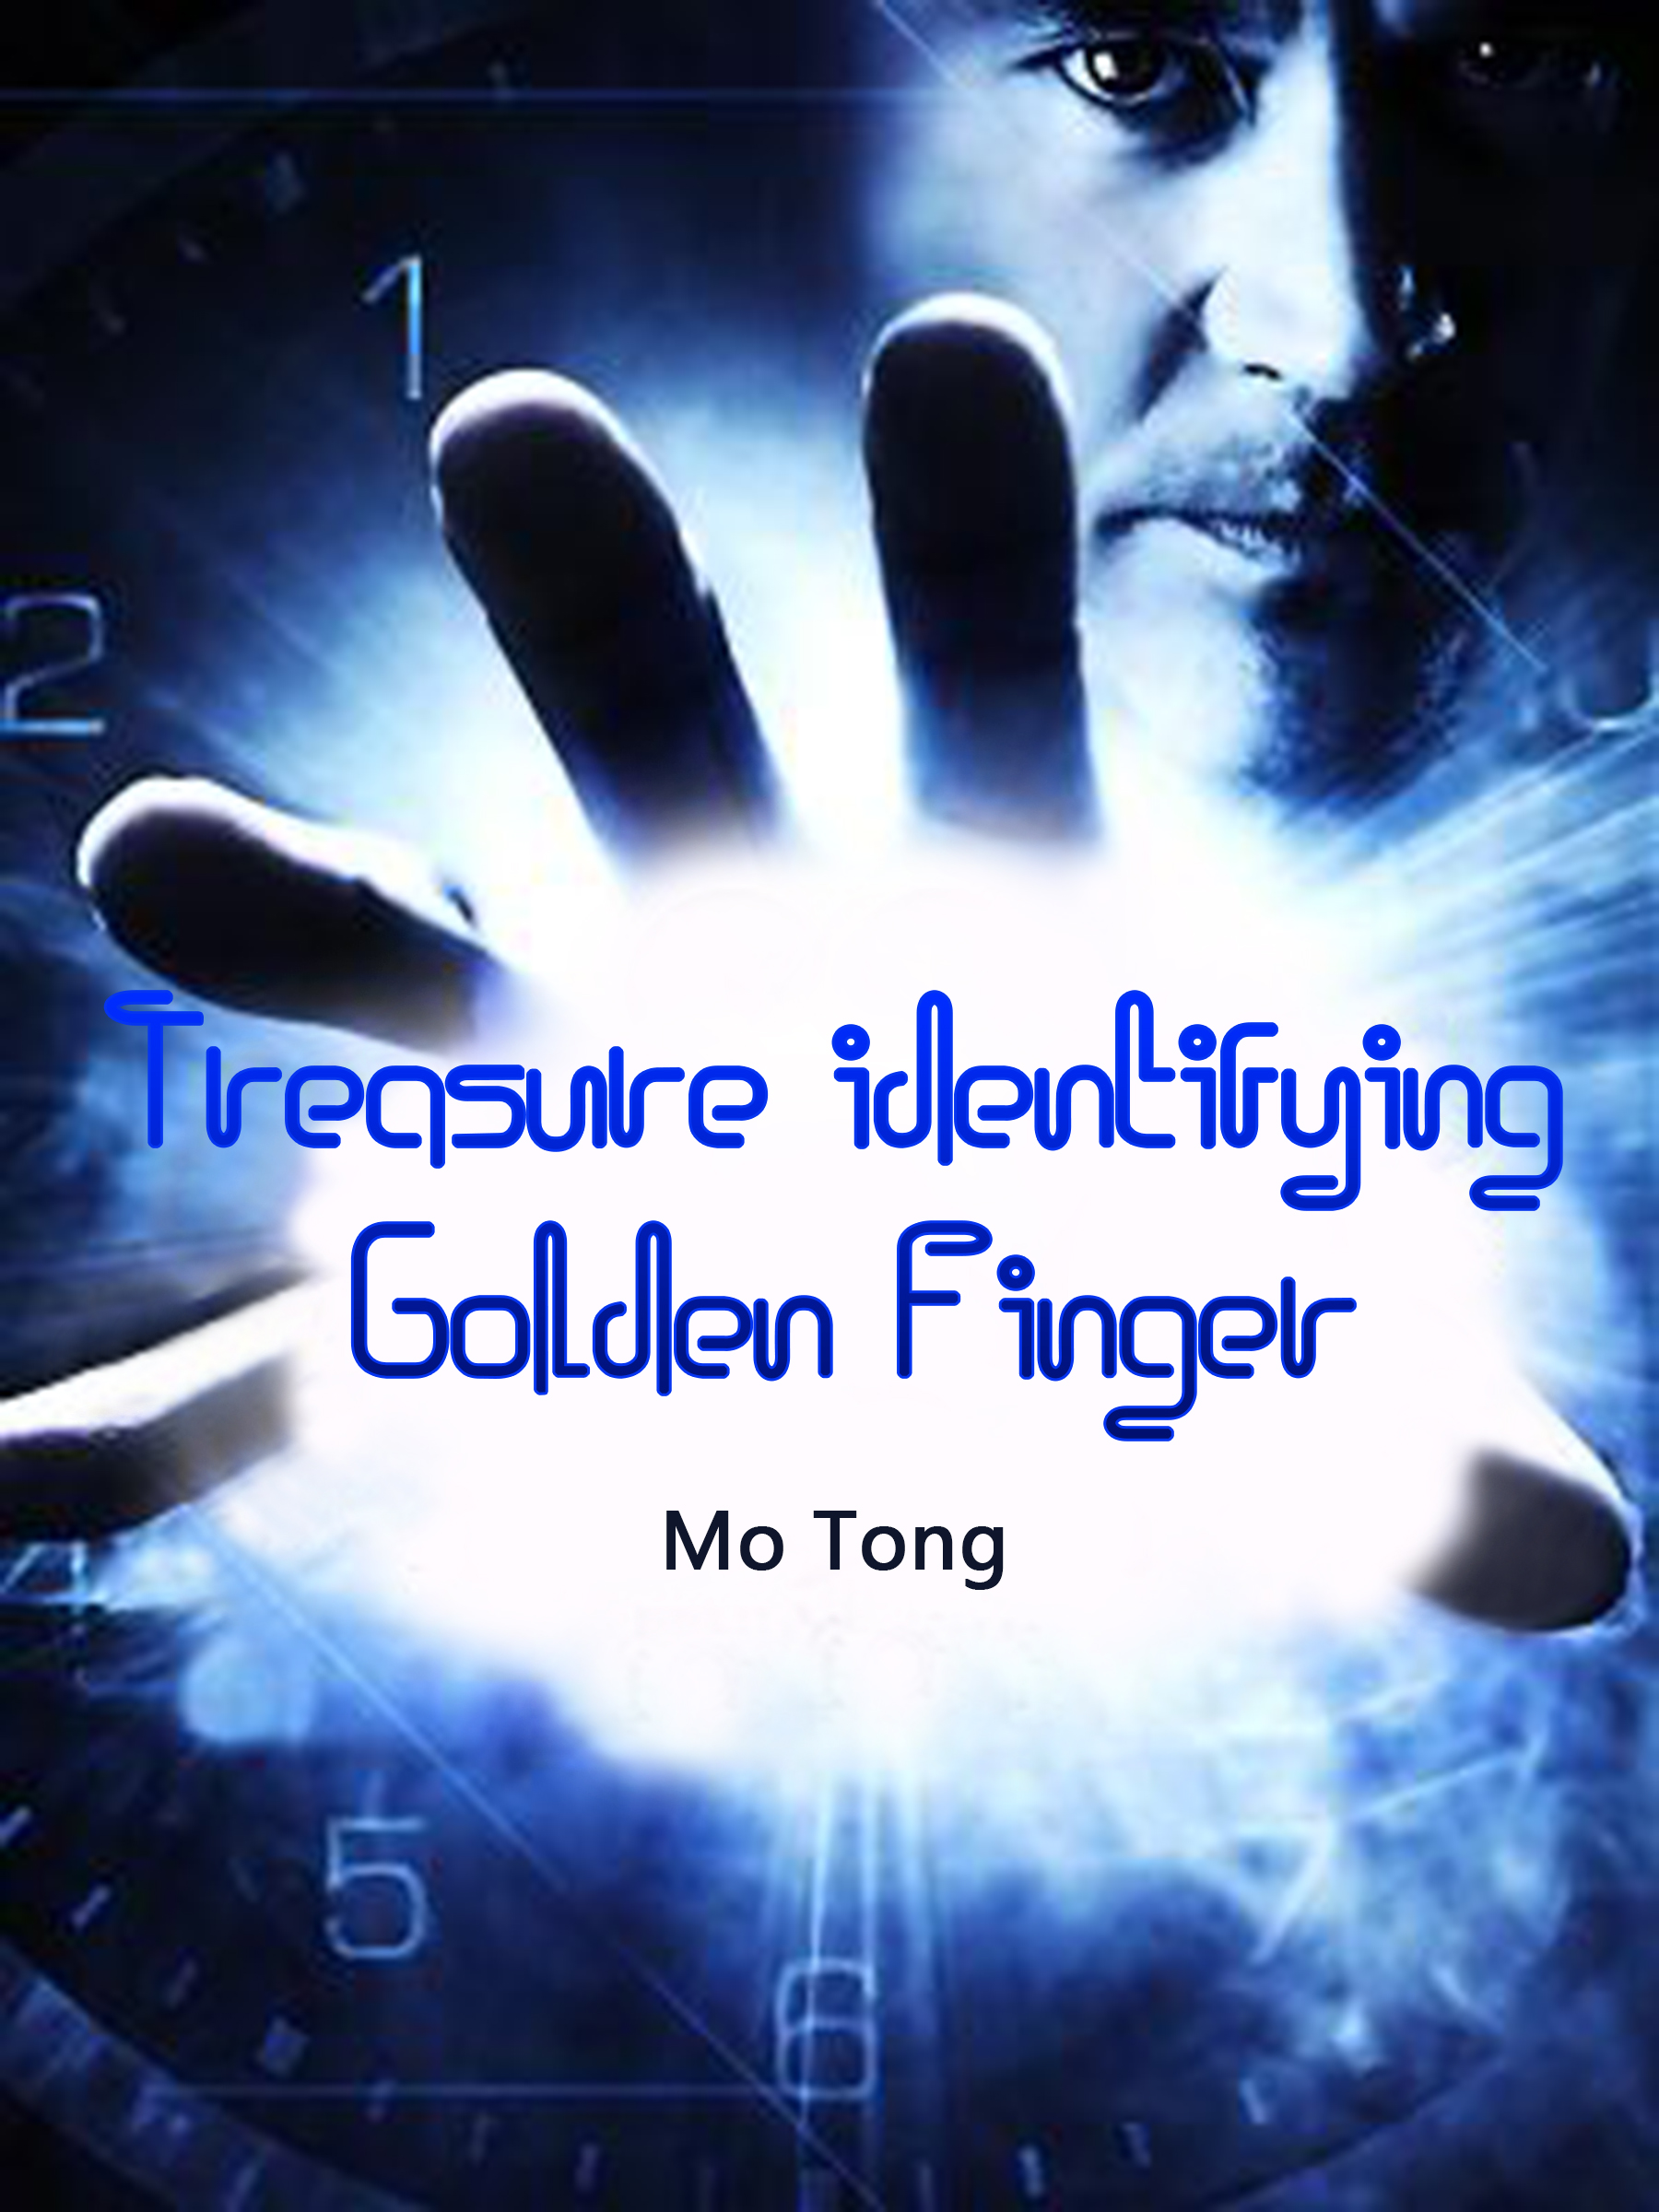 Treasure identifying Golden Finger